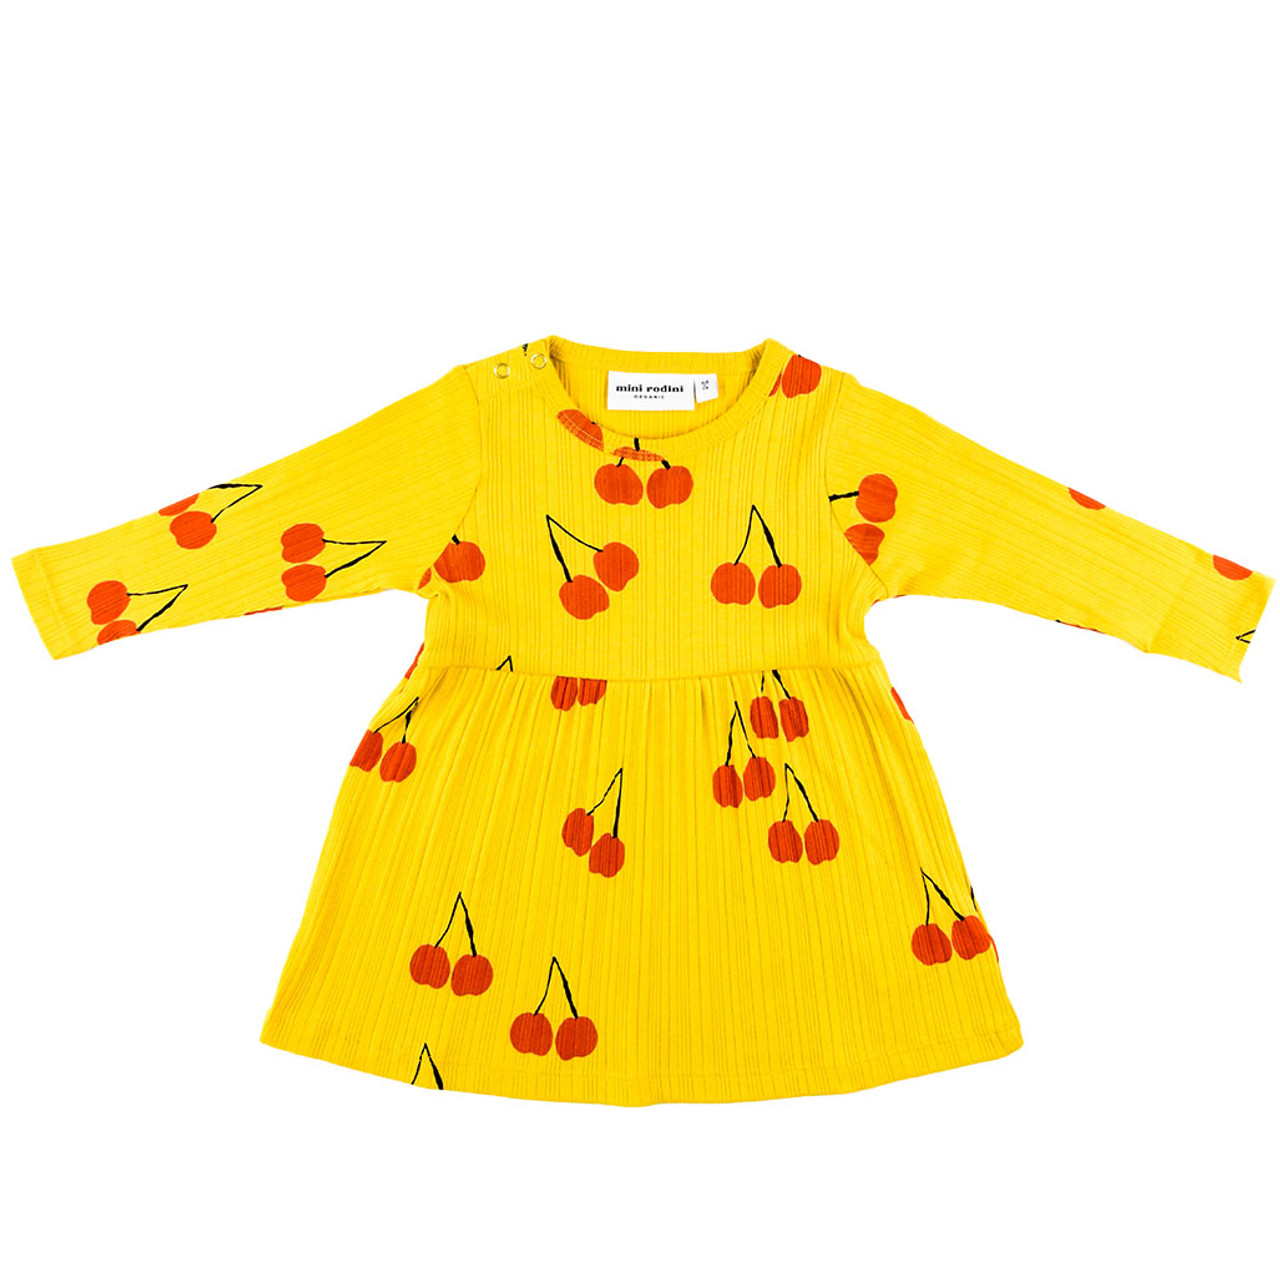 MINI RODINI Cherries Yellow Dress for Girls - Baby Collection | Hera +  Hermes